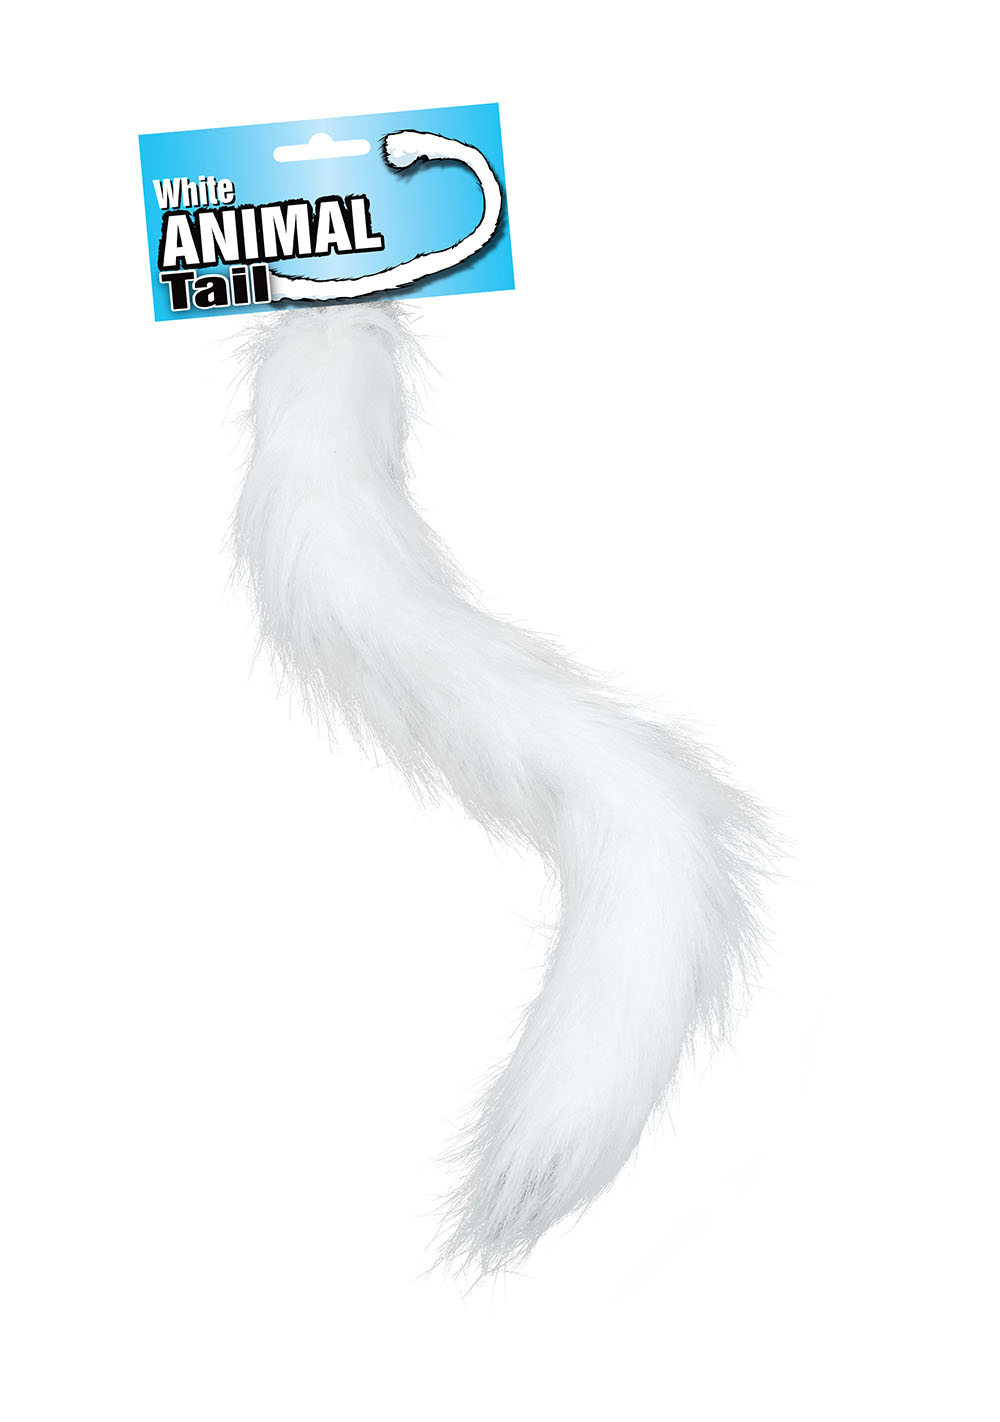 Animal Tail. White